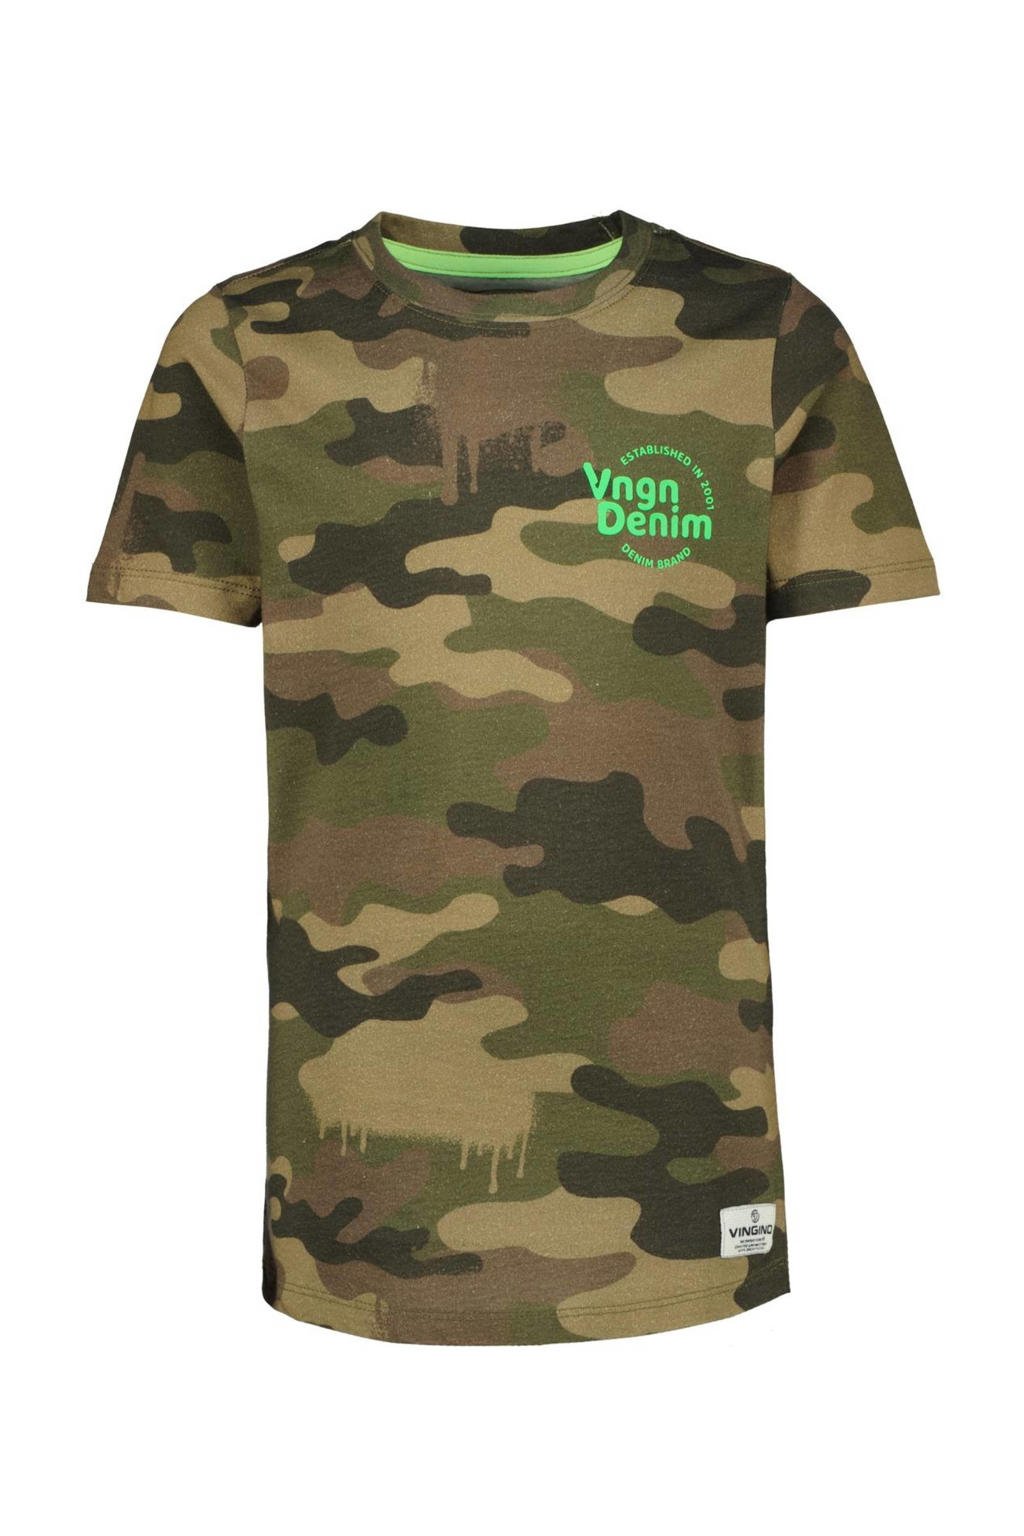 Groene jongens Vingino T-shirt van katoen met camouflageprint, korte mouwen en ronde hals